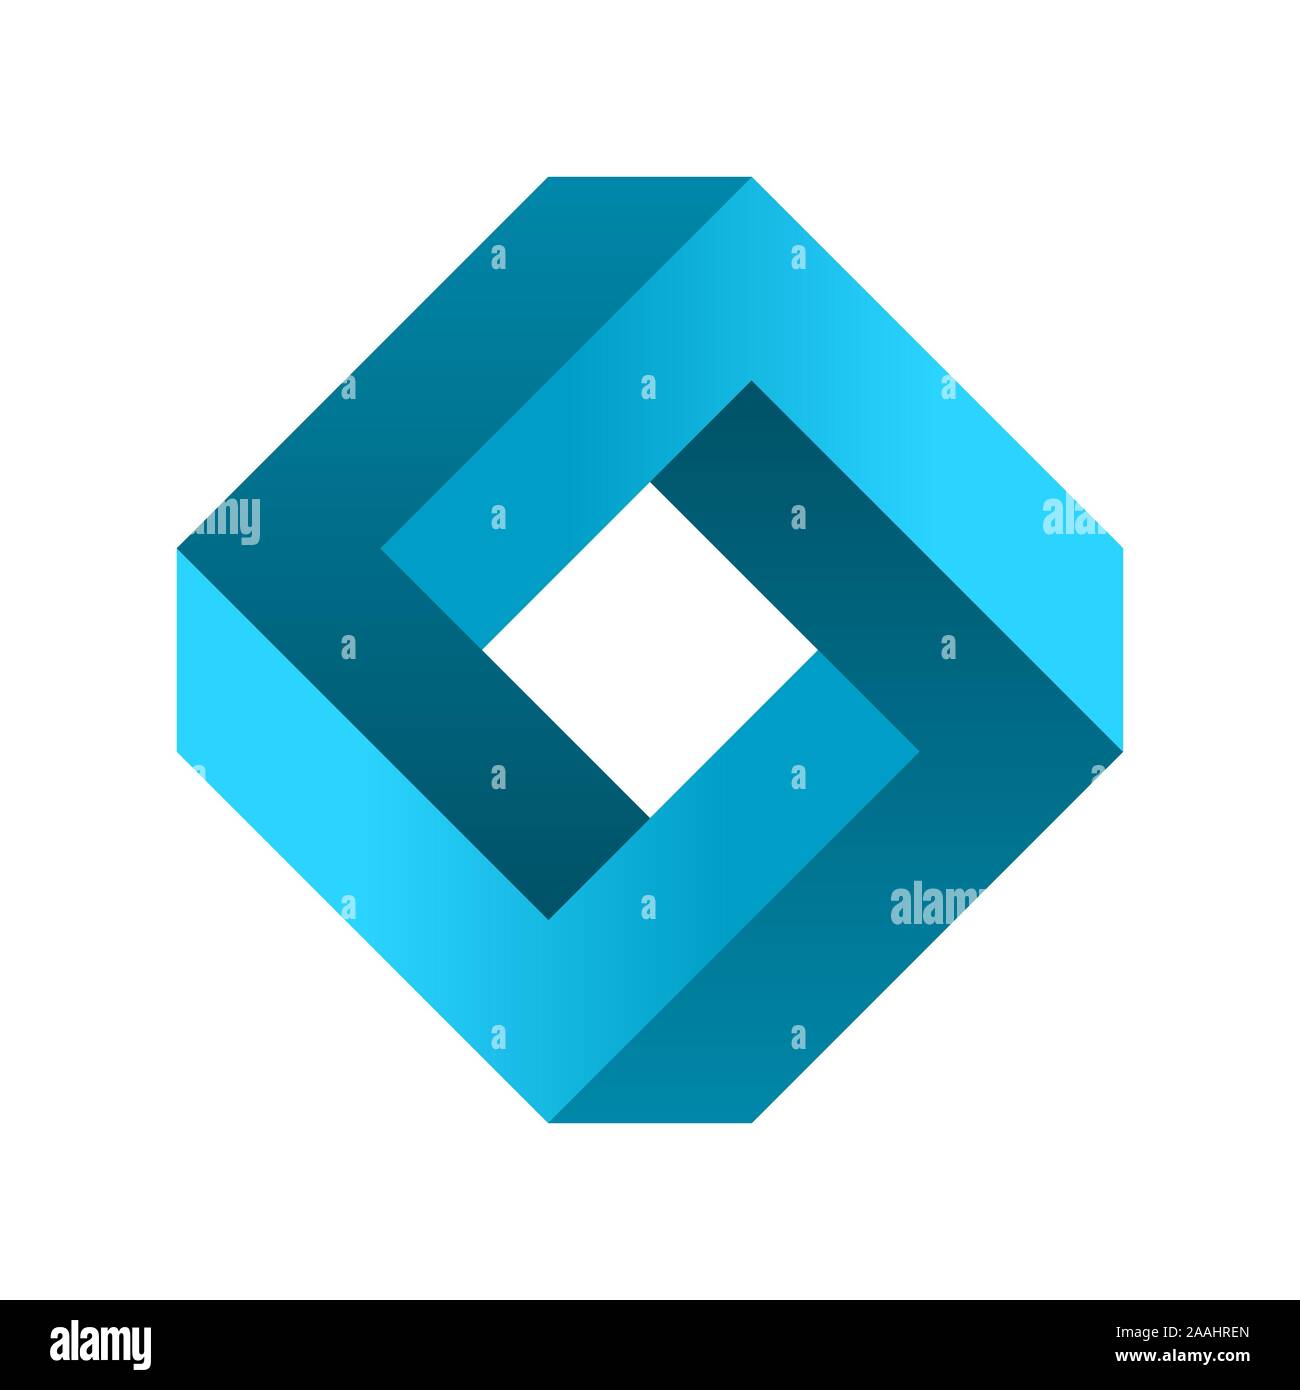 Impossibile forma rettangolare. Gradiente blu infinito rhombus figura. Illusione ottica. Abstract eterna oggetto geometrico. Impossibile infinite sign.vettore Illustrazione Vettoriale